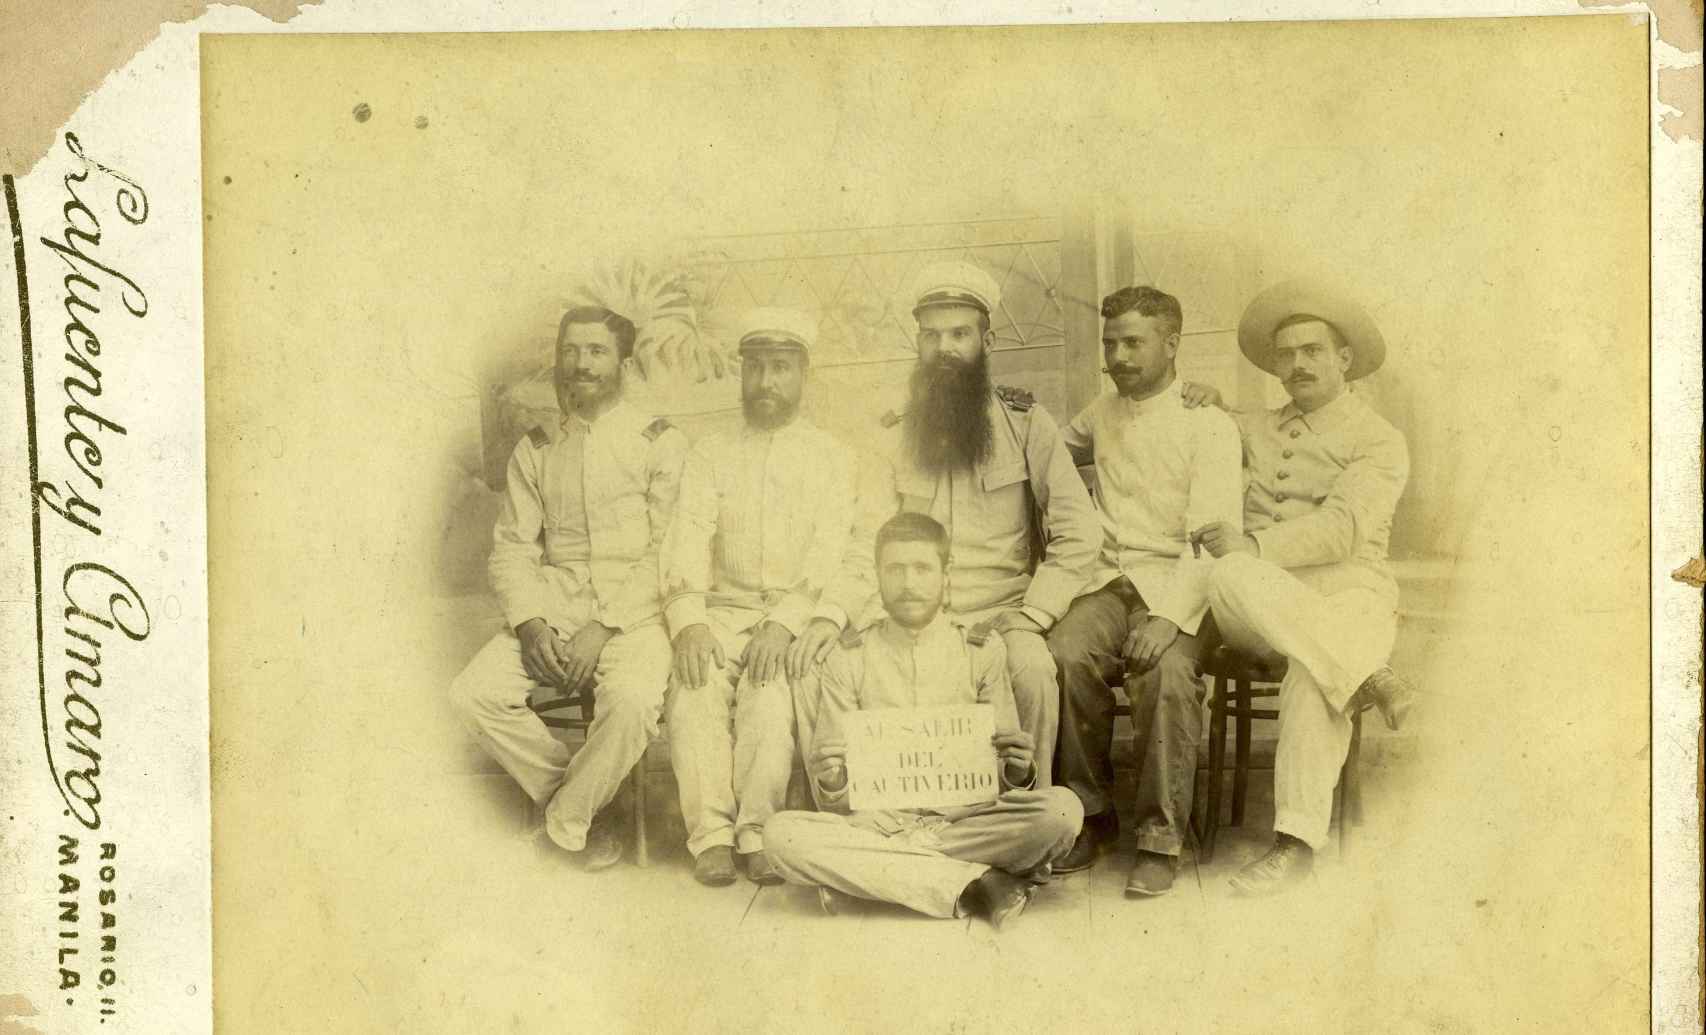 Teniente Mediano y cinco oficiales supervivientes de Tayabas fotografiados en 1900